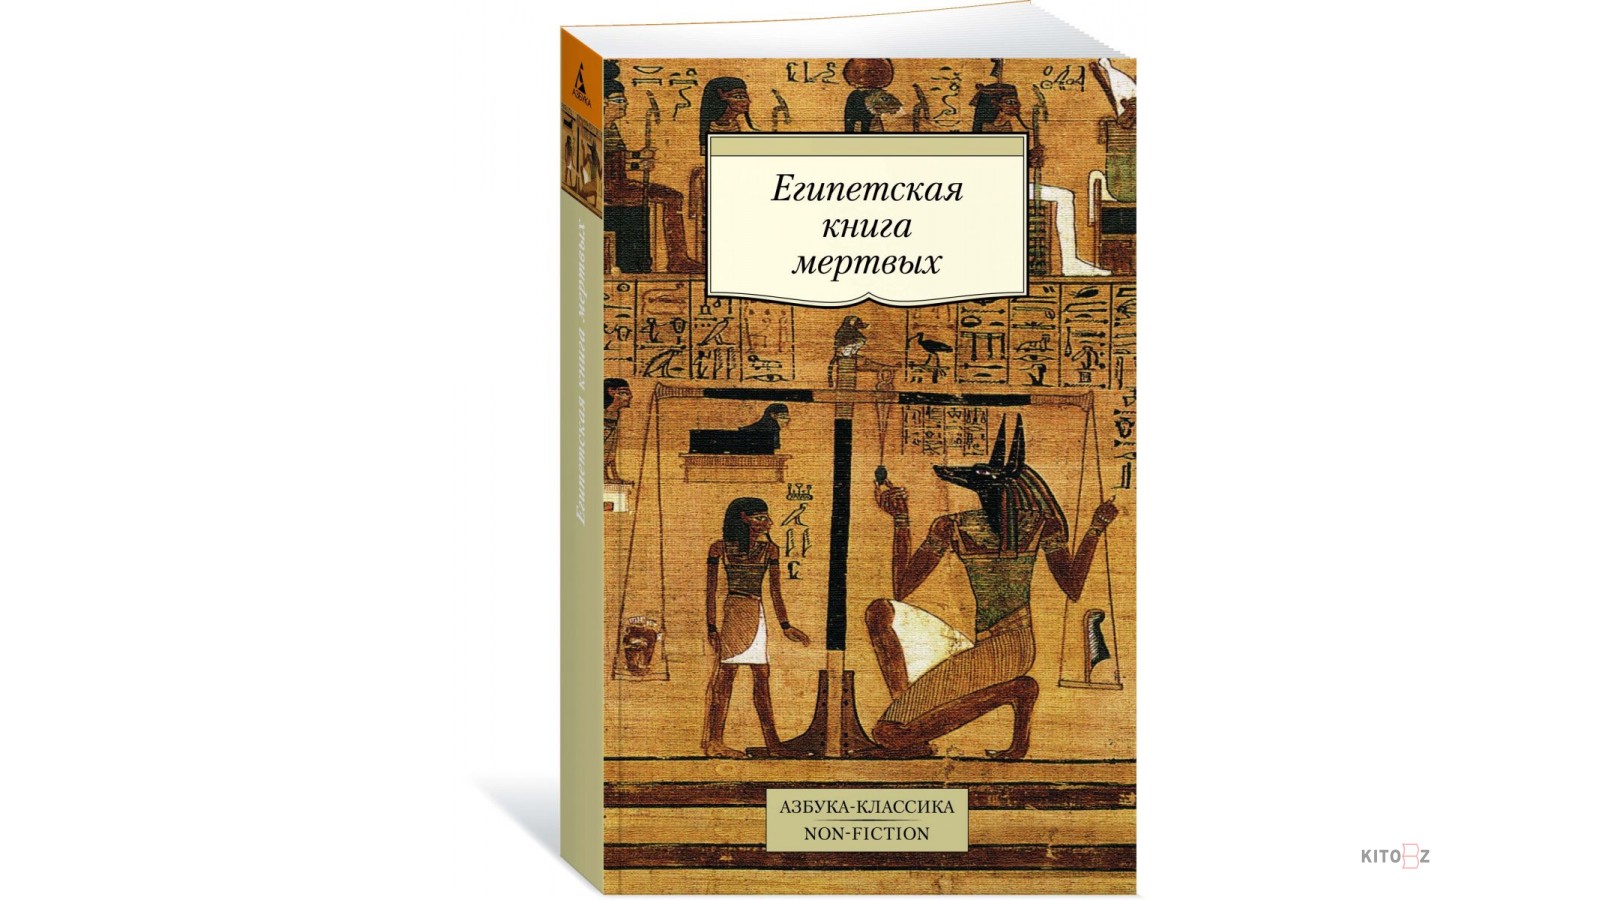 Книга мертвых впр. Книга мертвых. Египетские книги. Древнеегипетская литература. Книги про Египет.